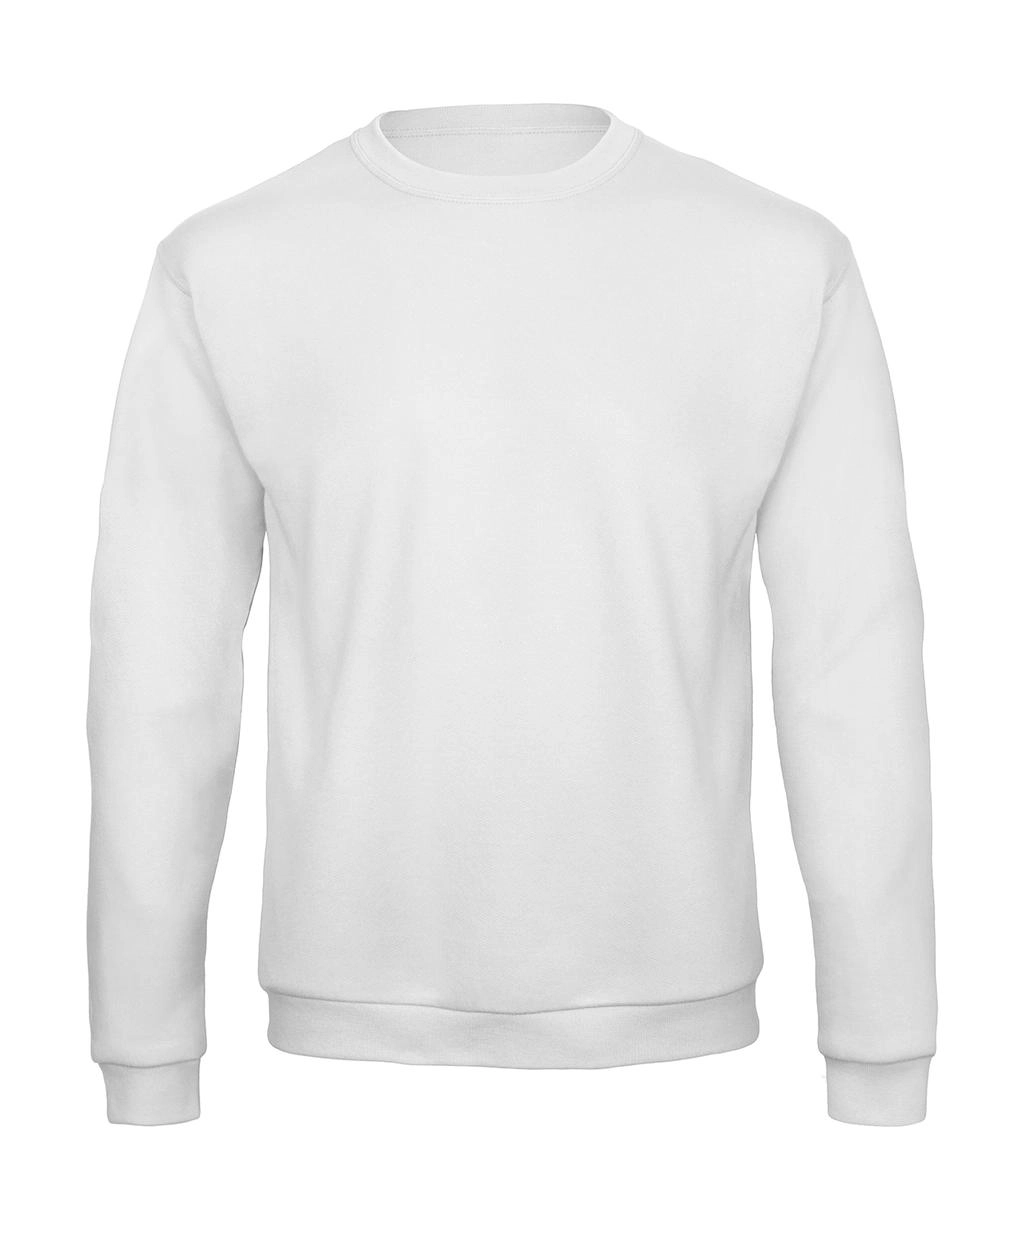 ID.202 50/50 Sweatshirt Unisex zum Besticken und Bedrucken in der Farbe White mit Ihren Logo, Schriftzug oder Motiv.